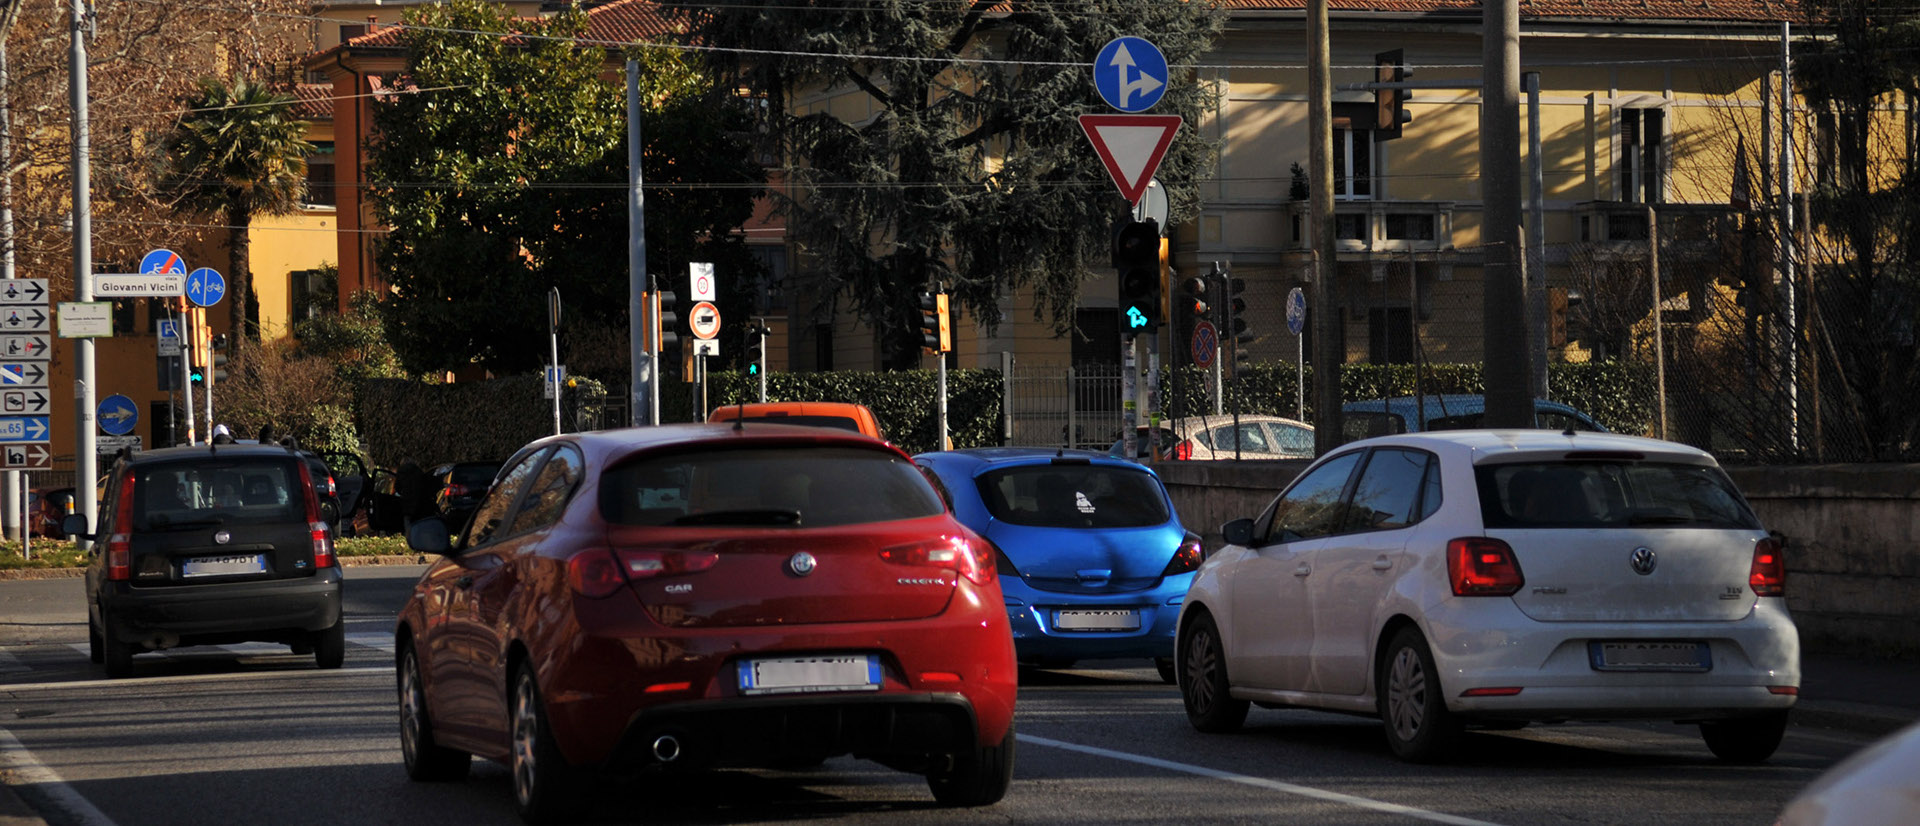 Automobili in strada - Archivio Città metropolitana di Bologna